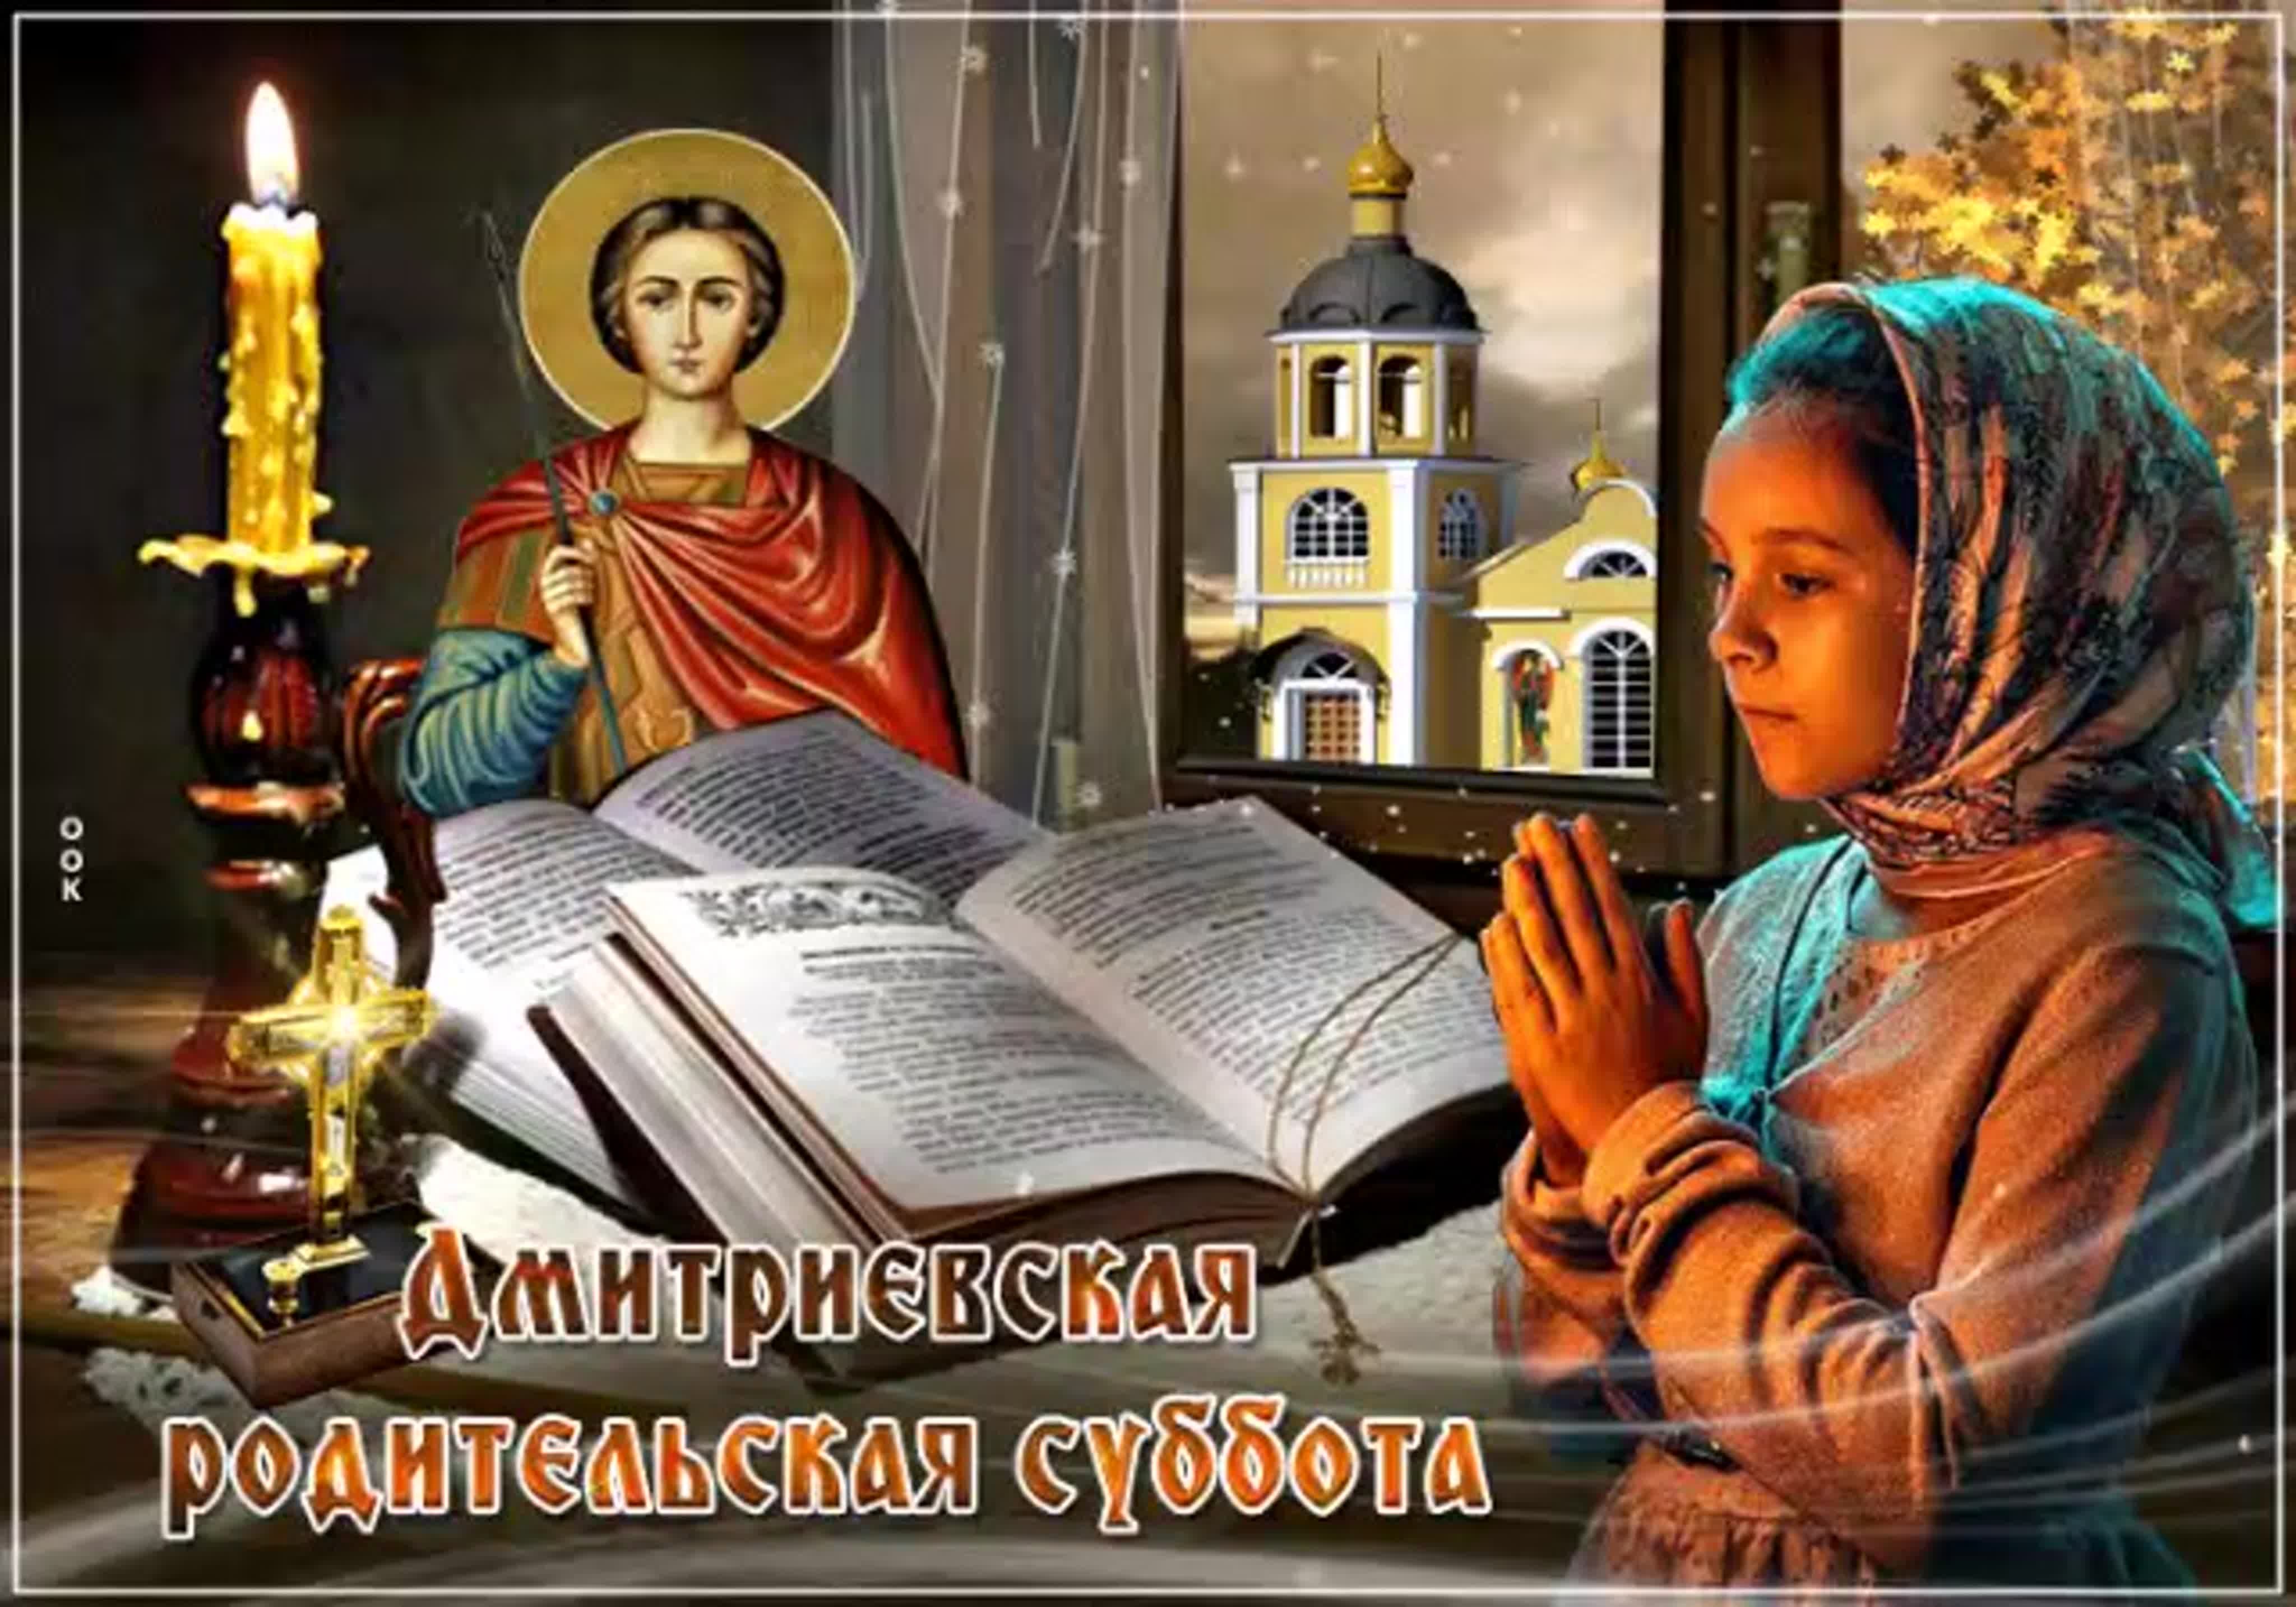 Православный праздник в субботу